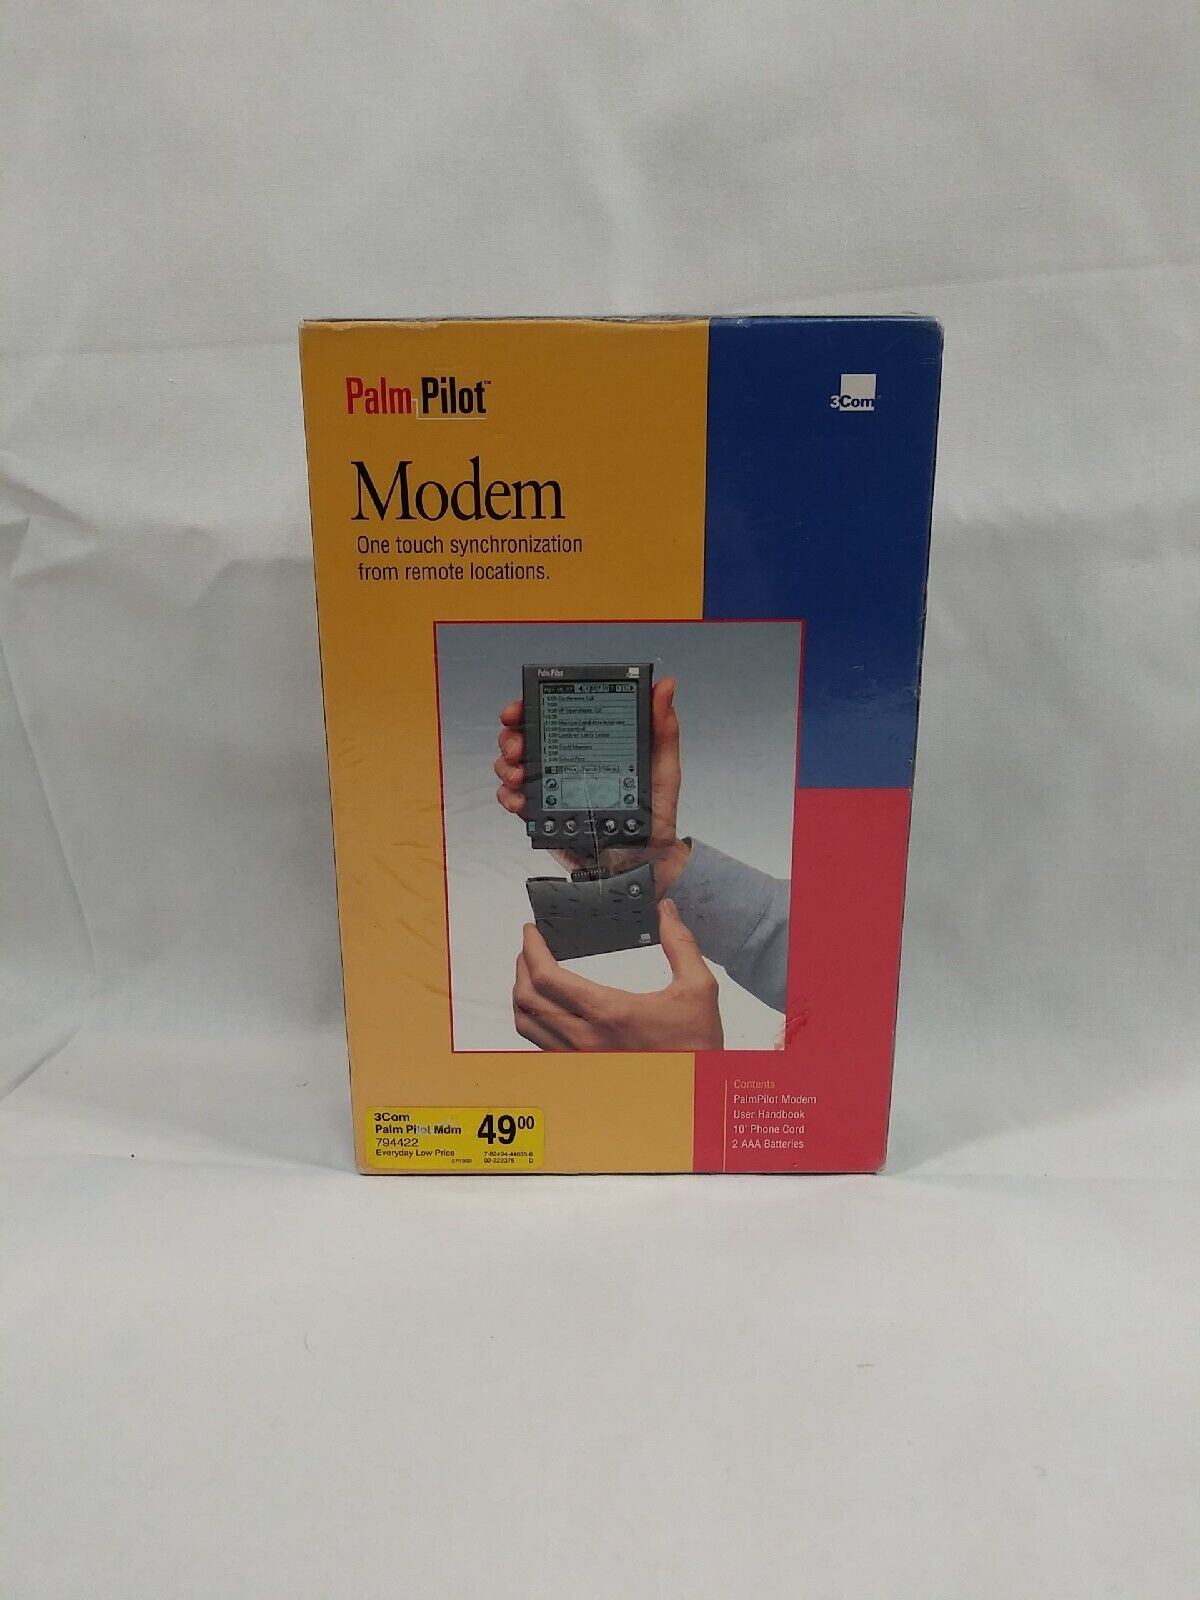 Vintage 3Com PalmPilot Modem One Touch Synchronization (10201U) 14.4 Kbps